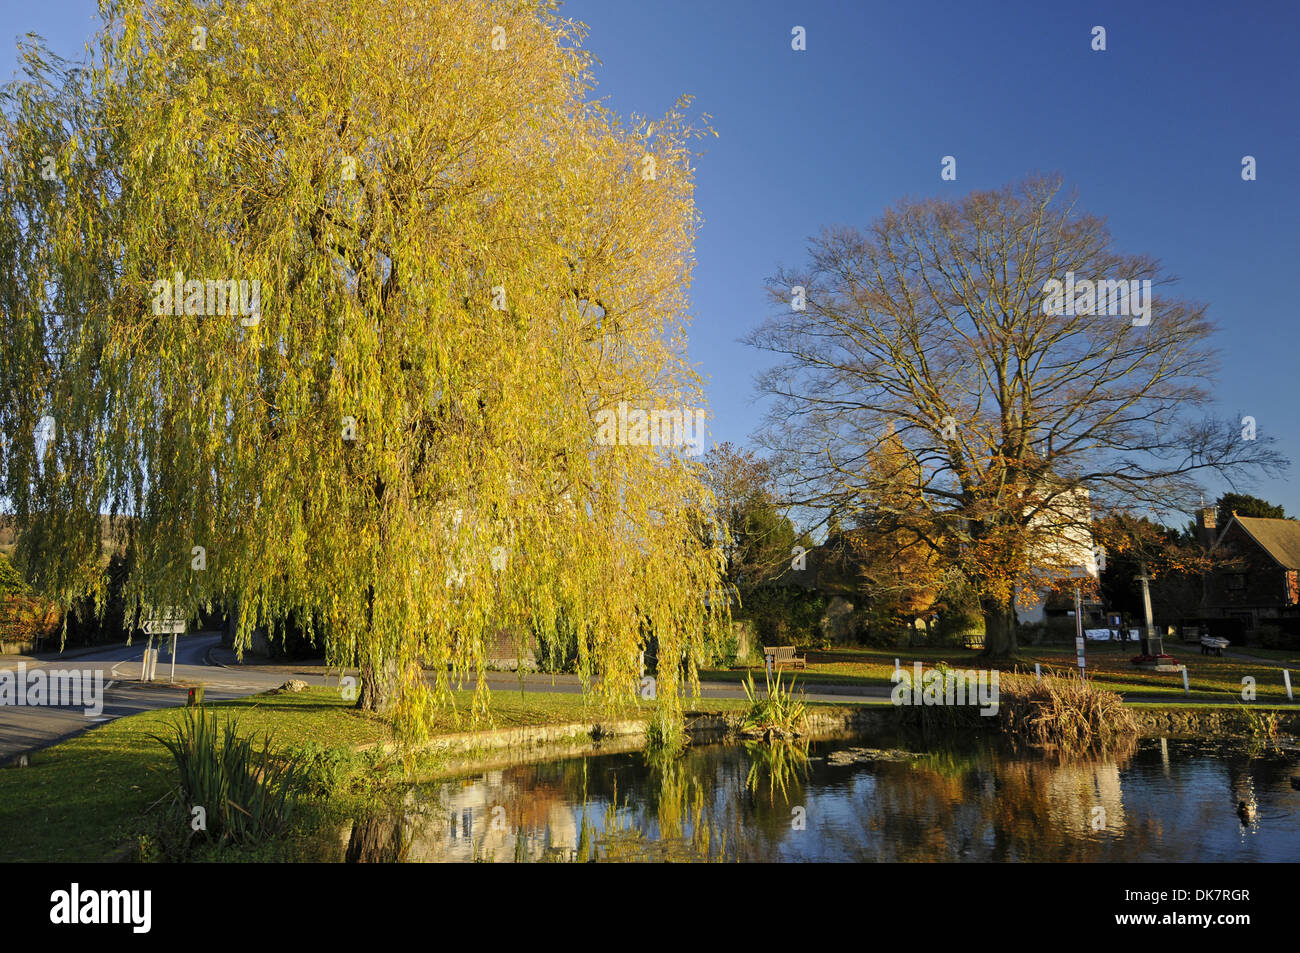 Autumn Trees around Pond in the Village of Otford Kent England Stock Photo